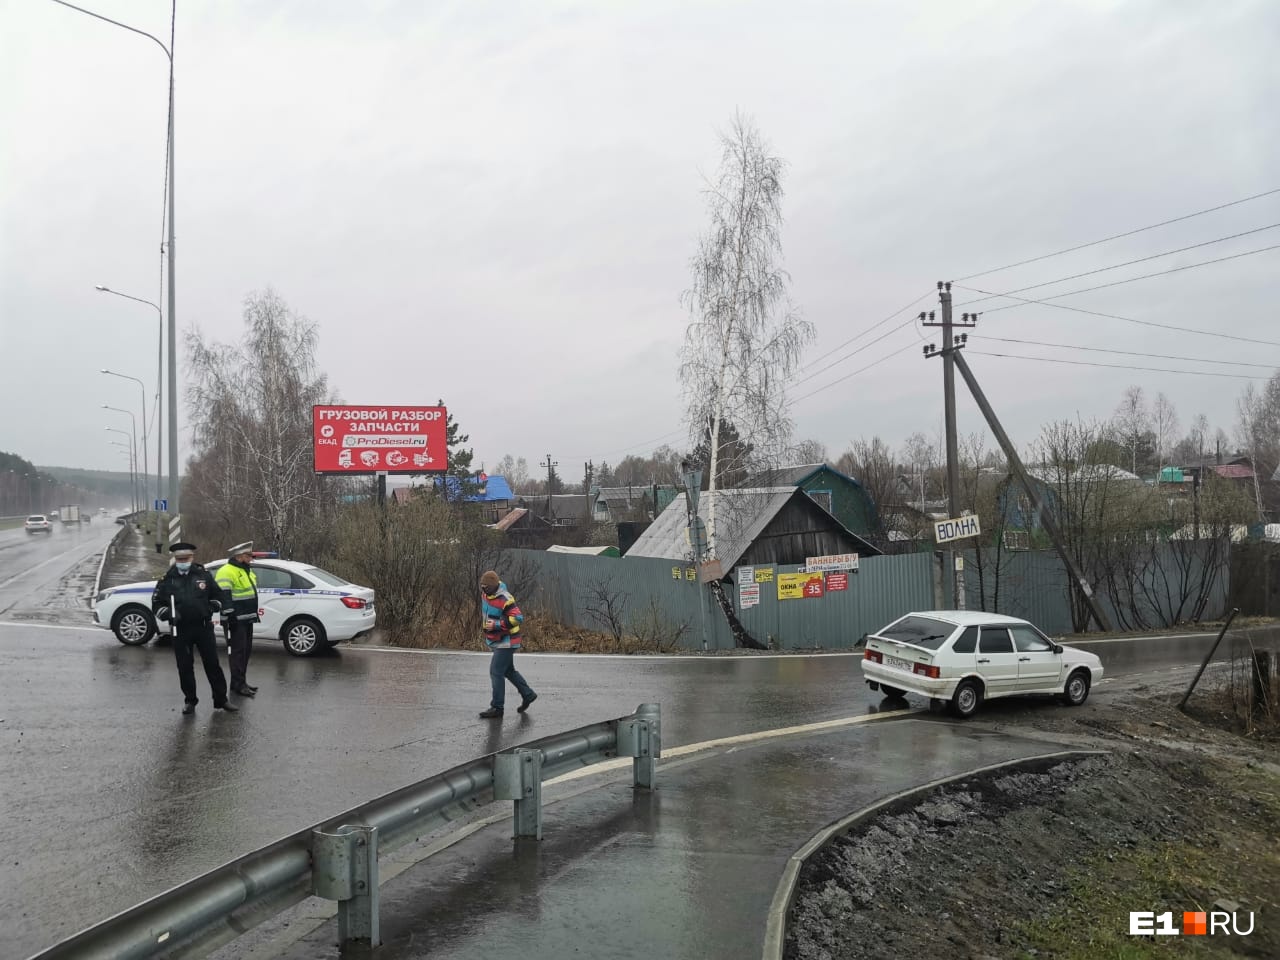 Террористы, которых ликвидировали под Екатеринбургом, устроили оружейный склад в брошенной сторожке